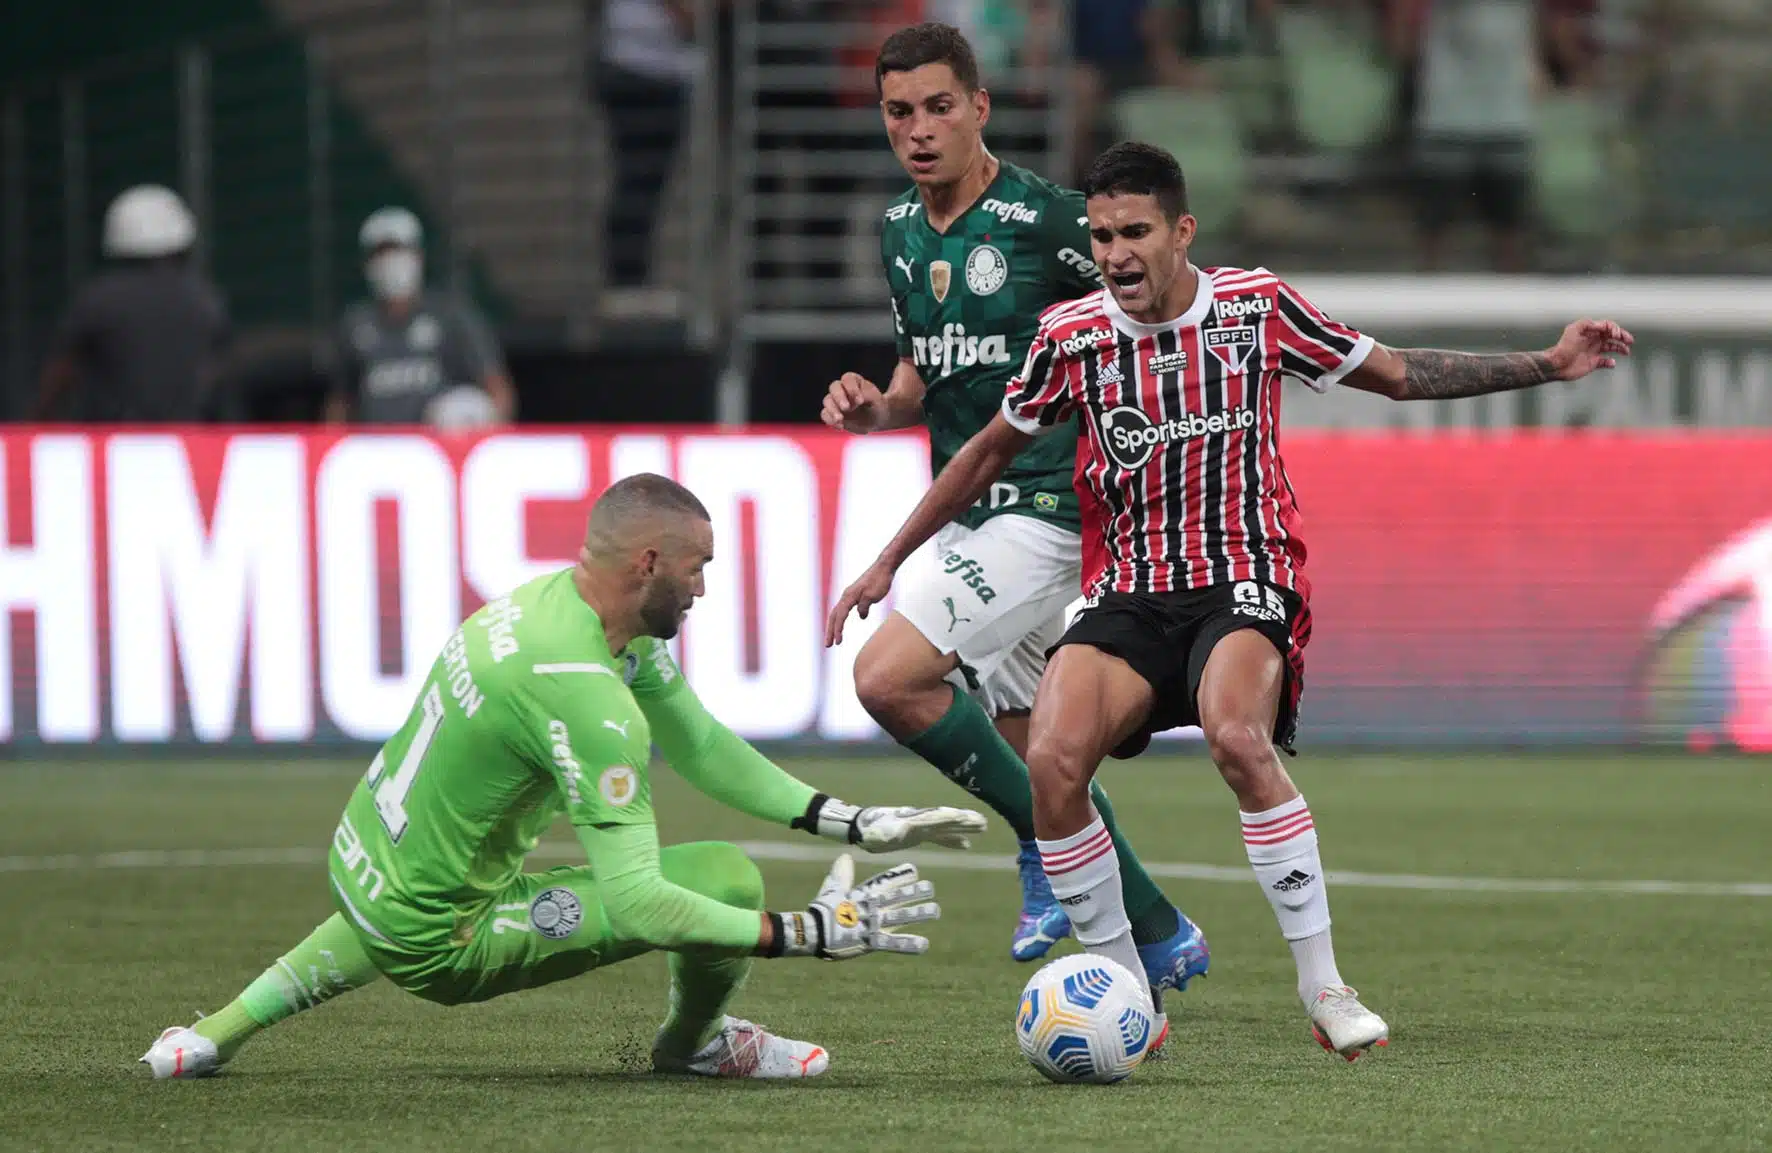 Nos últimos dez confrontos, São Paulo leva vantagem sobre o Palmeiras